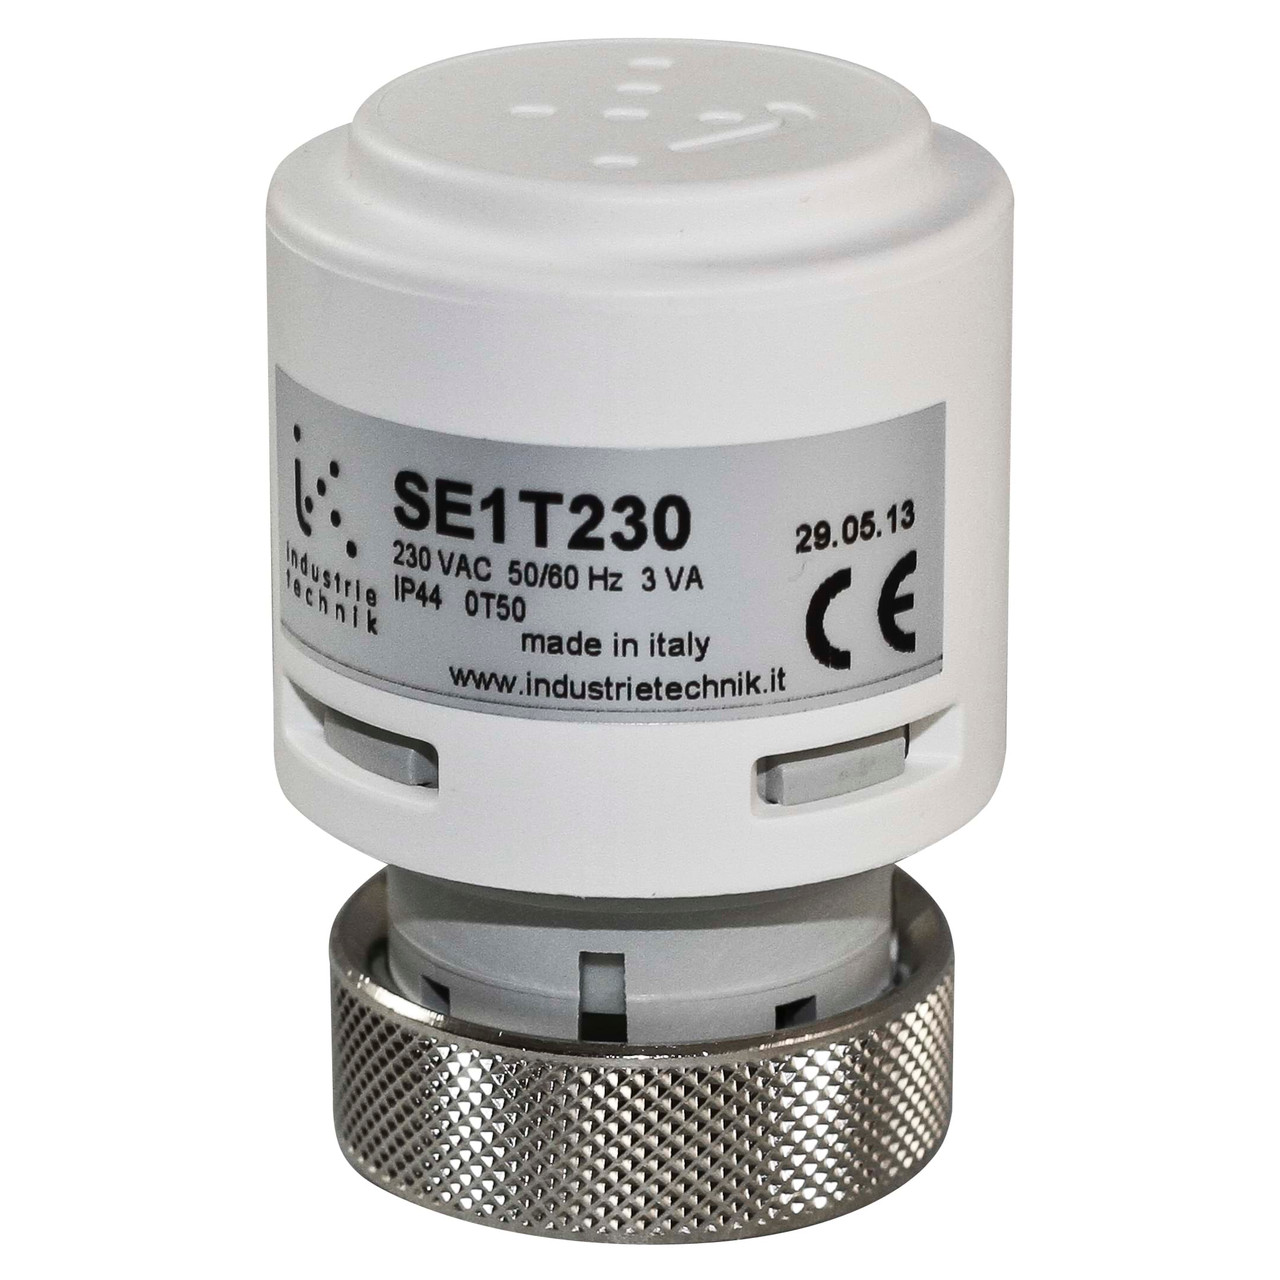 SE1T230 Thermal Actuators 100140 N 2.5 Mm Stroke P11984